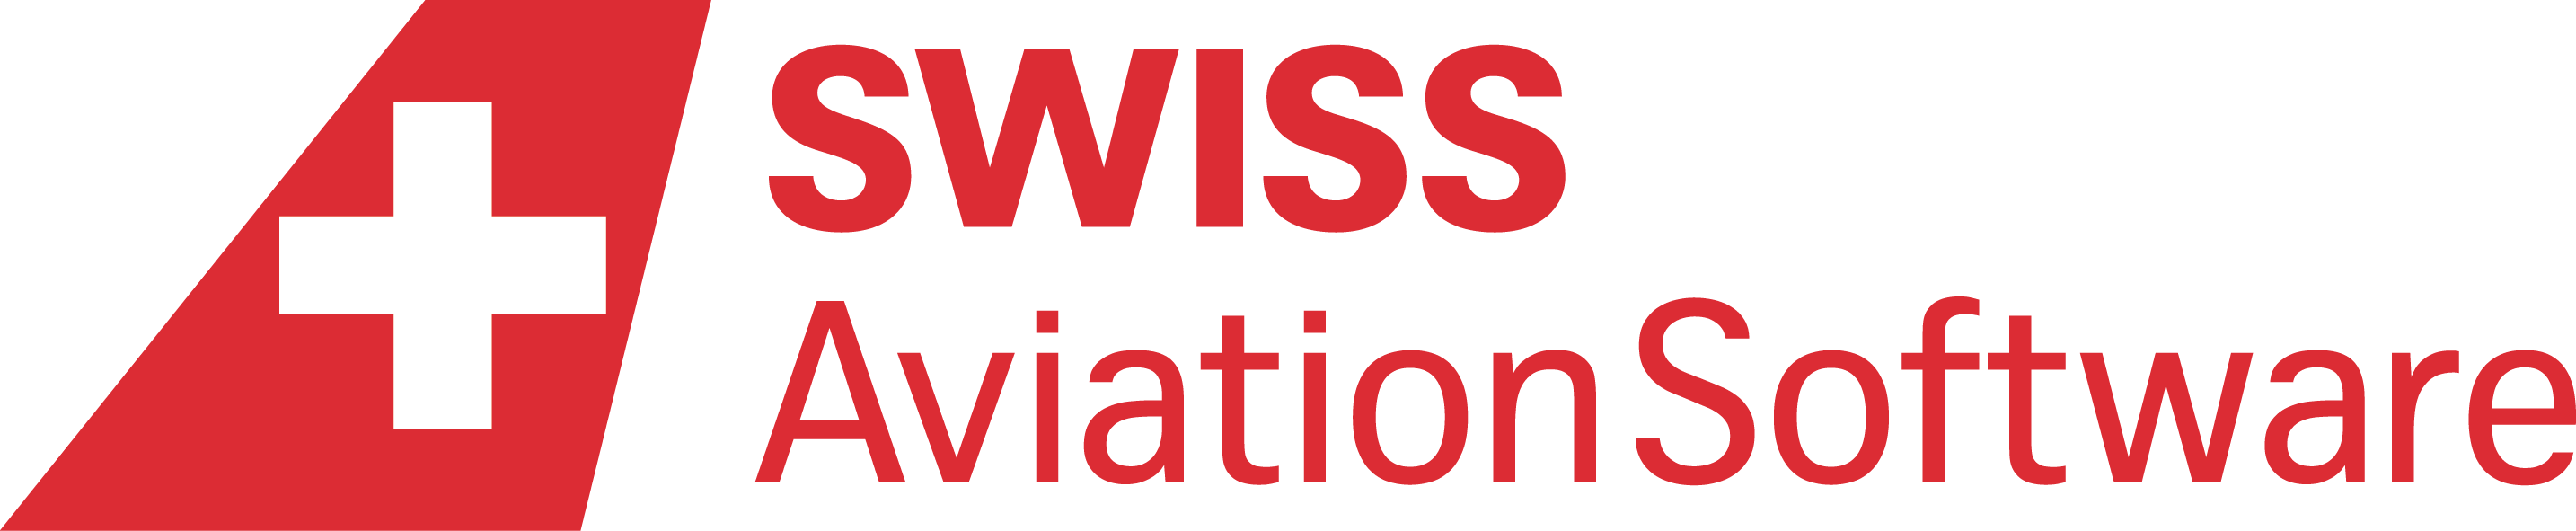 SwissAviationSoftware_Logo